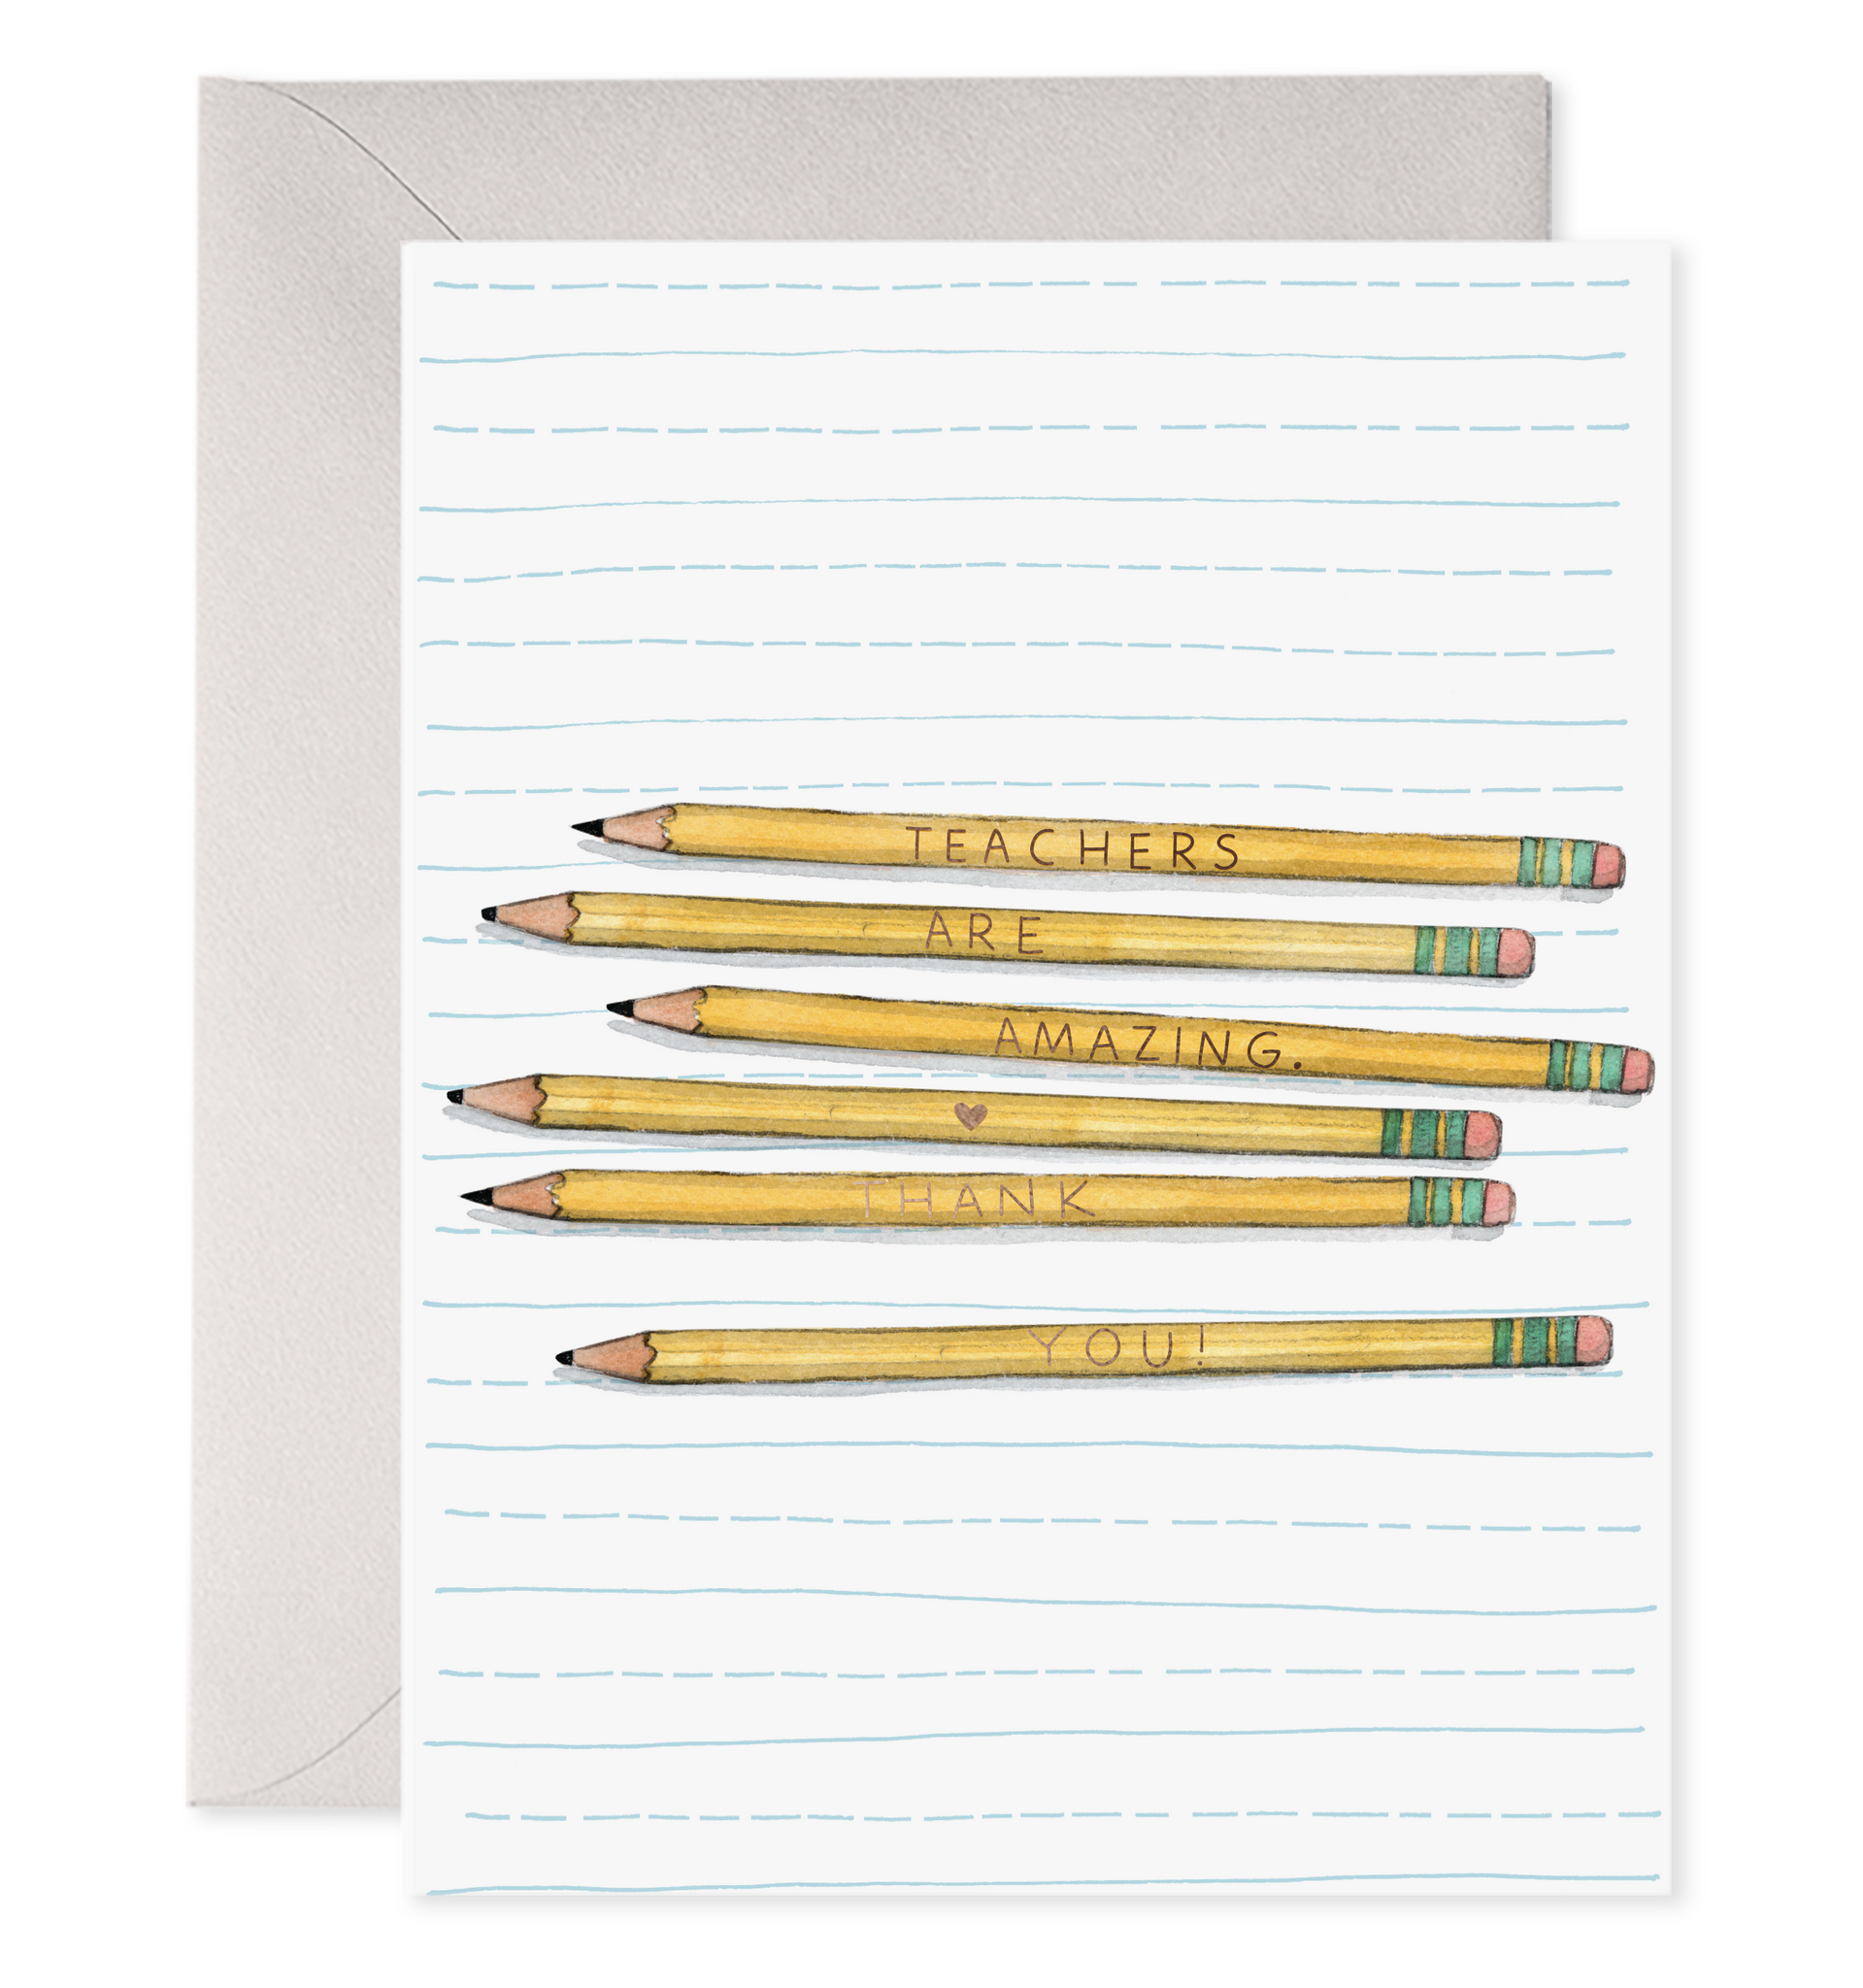 Teacher Pencils